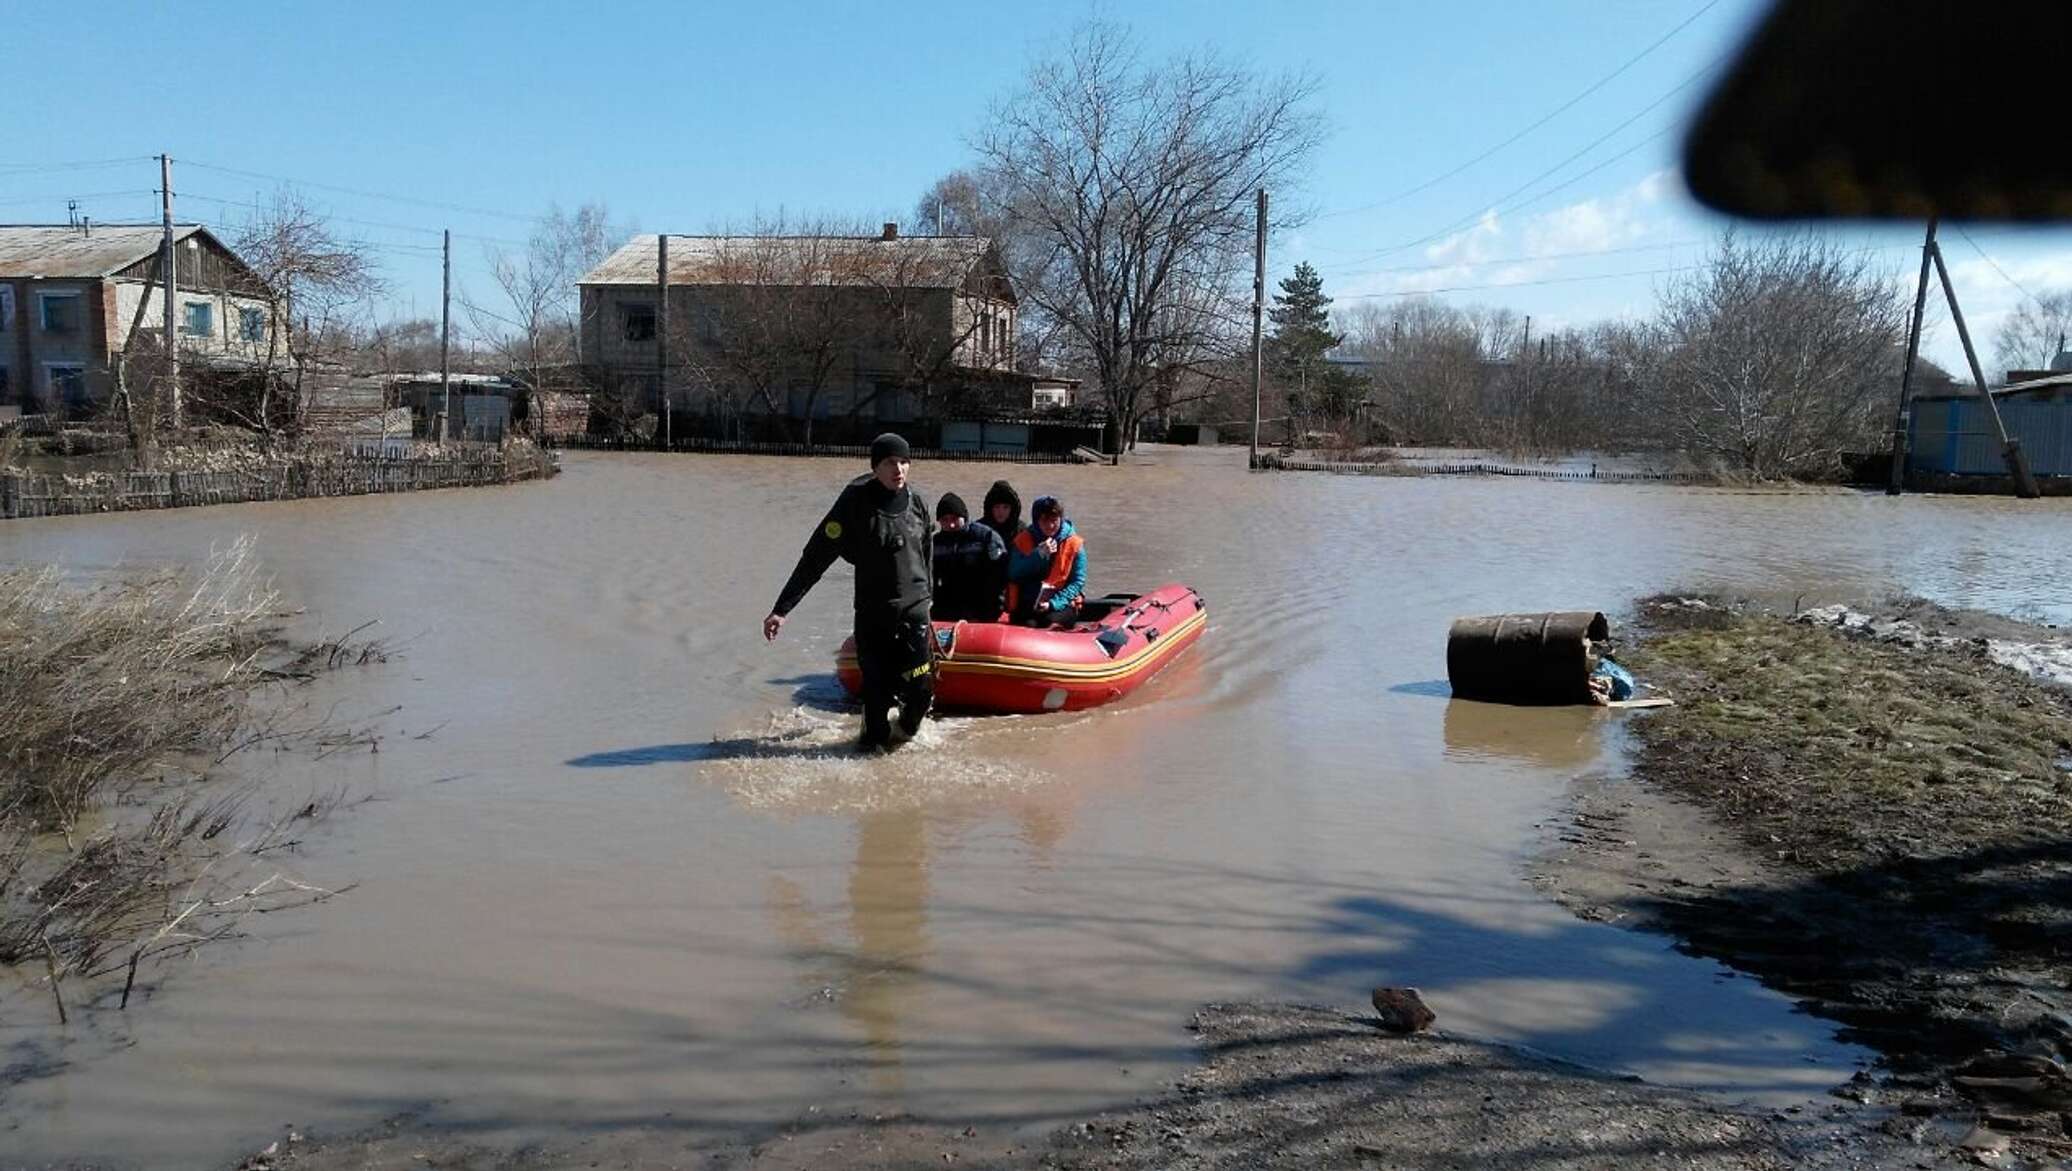 Села мен. Паводок. Наводнение в Казахстане. ЧС наводнение. Казахстан паводки.